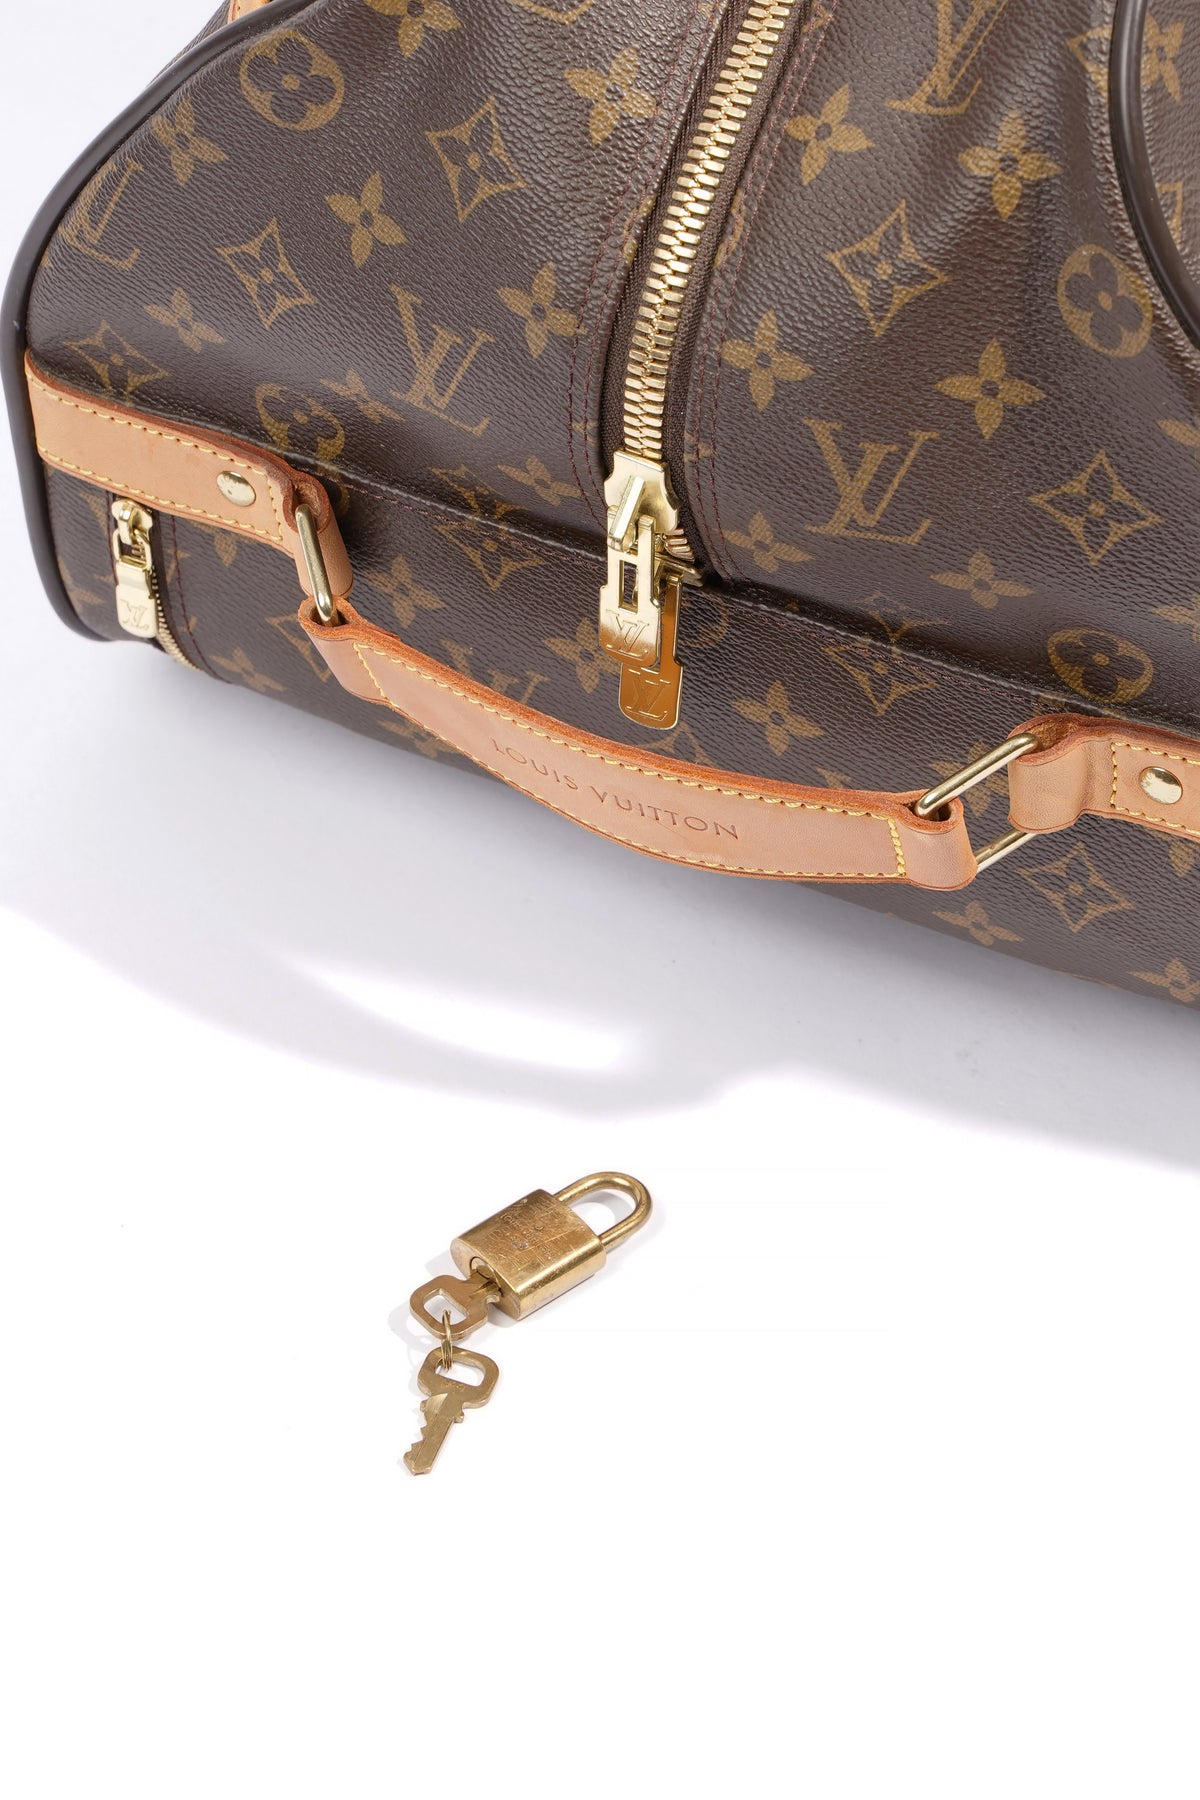 Louis Vuitton Eole Travel bag 357472